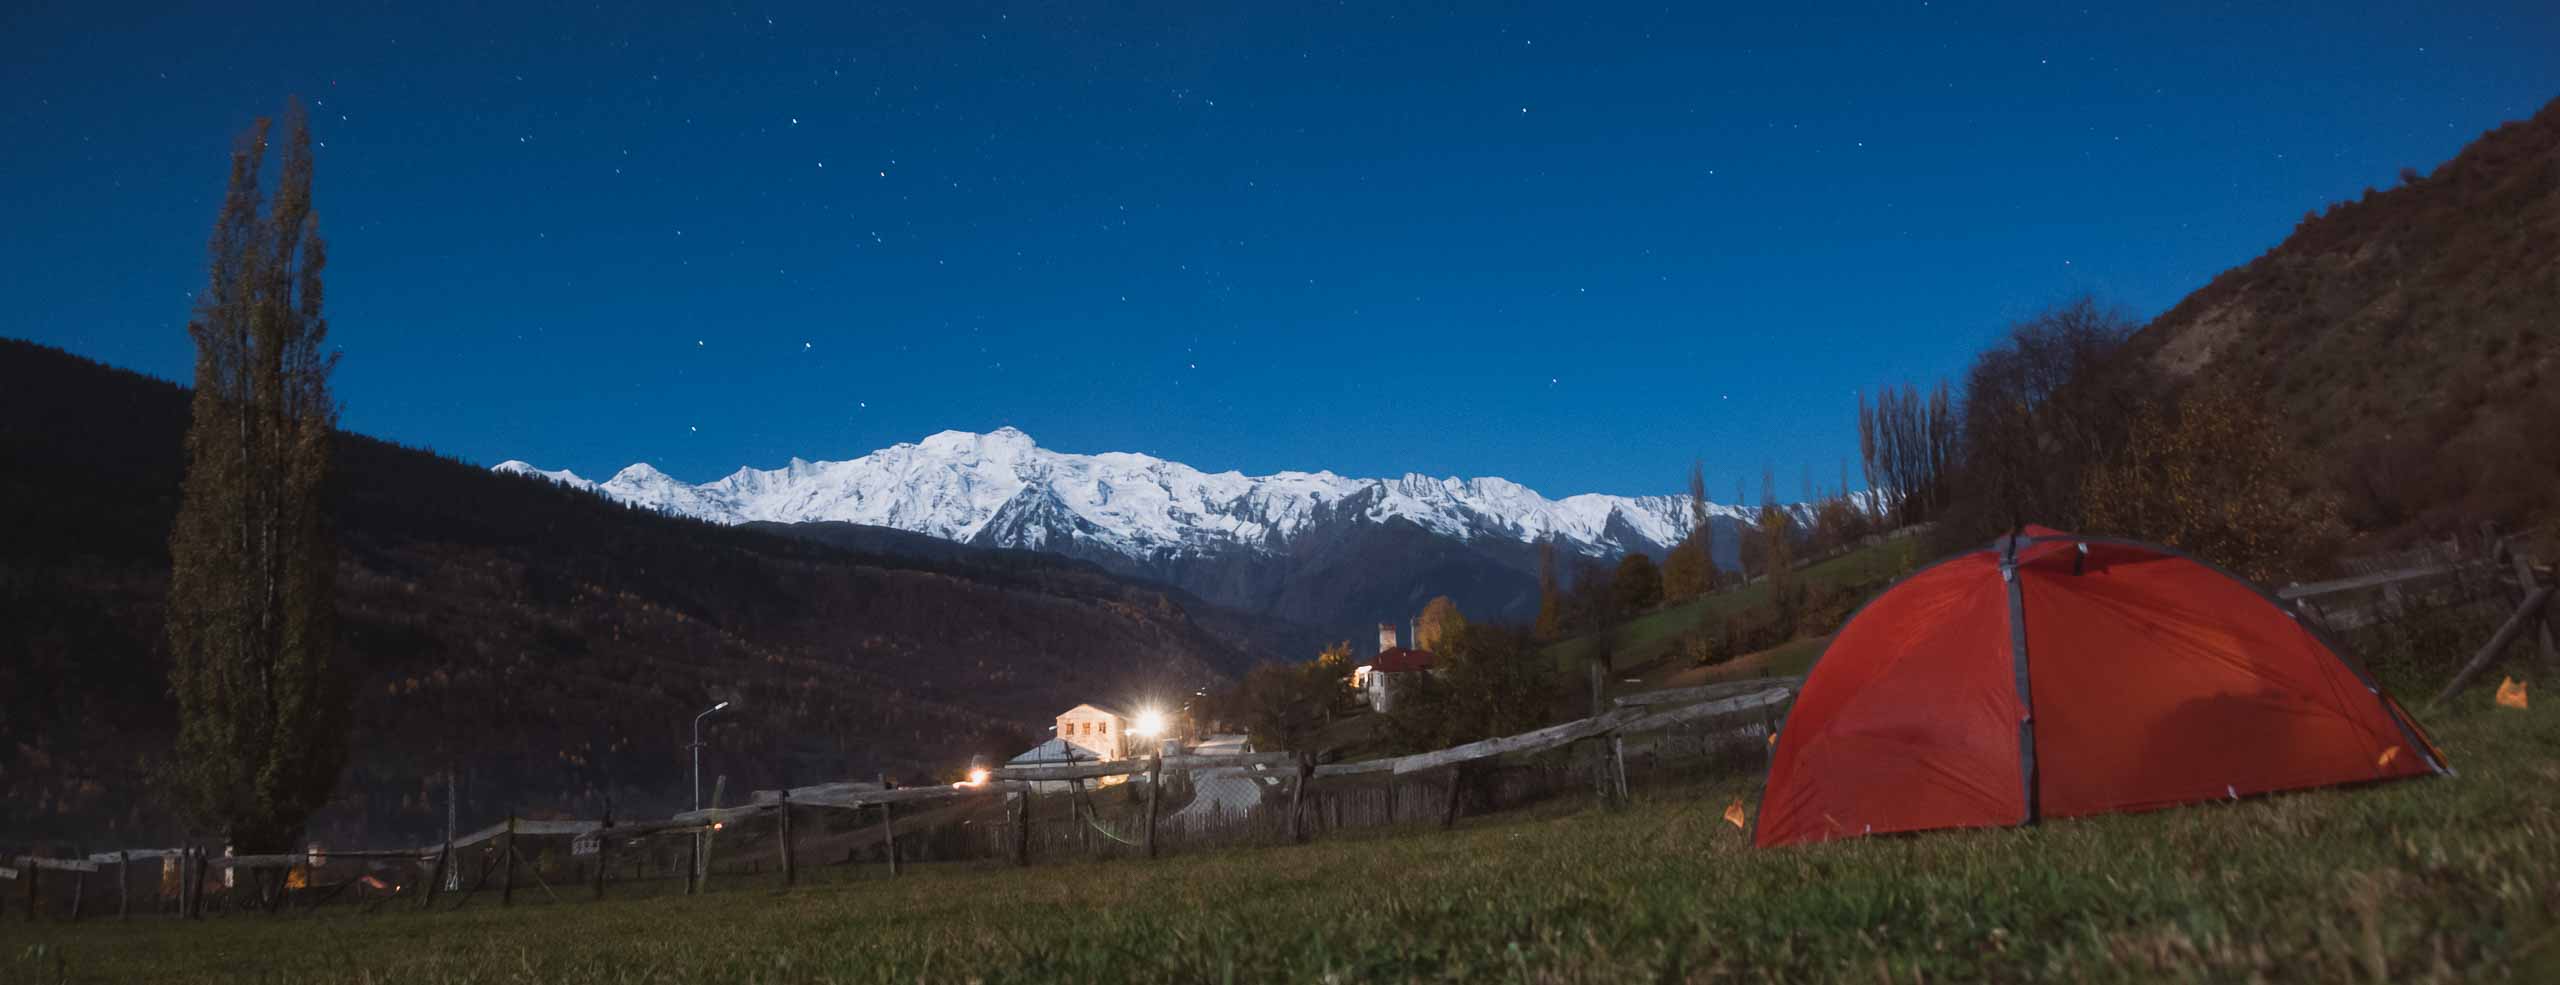 Bivouac dans le Haut-Caucase près de Mestia, Svaneti, Géorgie. Une tente rouge dans un champ avec des montagnes enneigée en fond, et un ciel étoilé